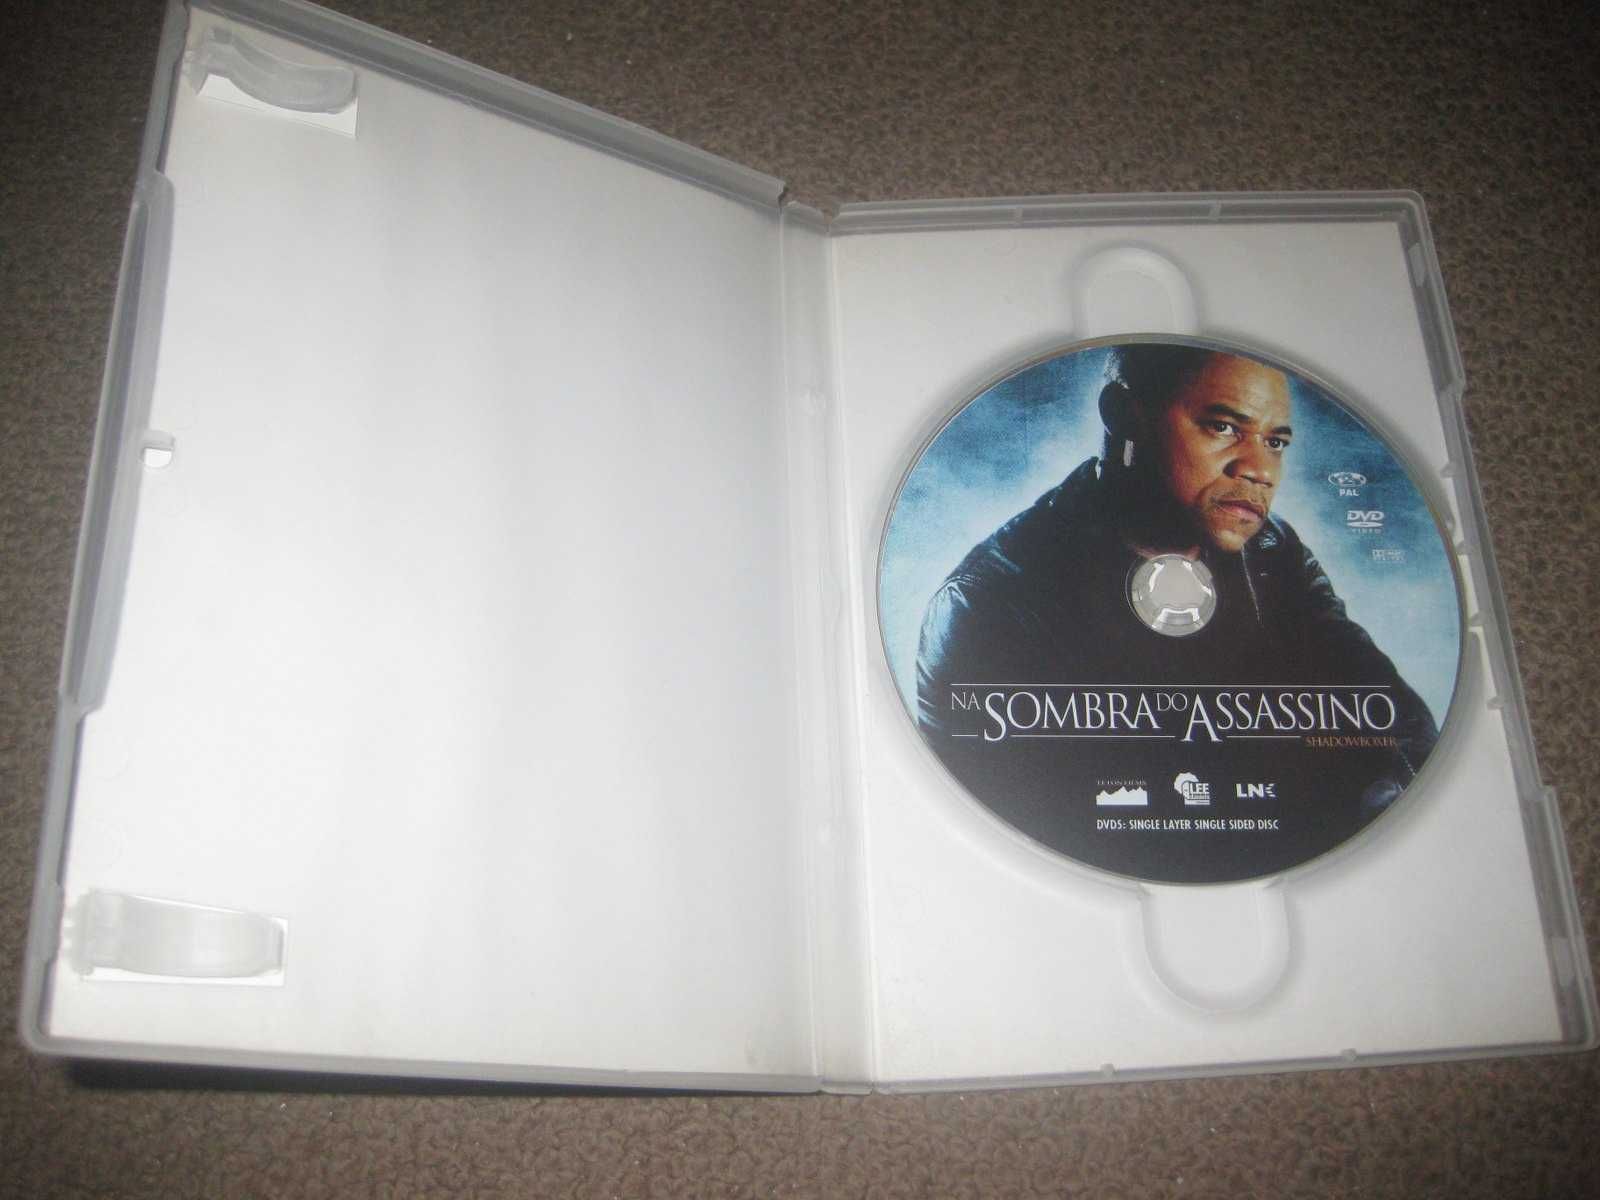 DVD "Na Sombra do Assassino" com Cuba Gooding Jr.